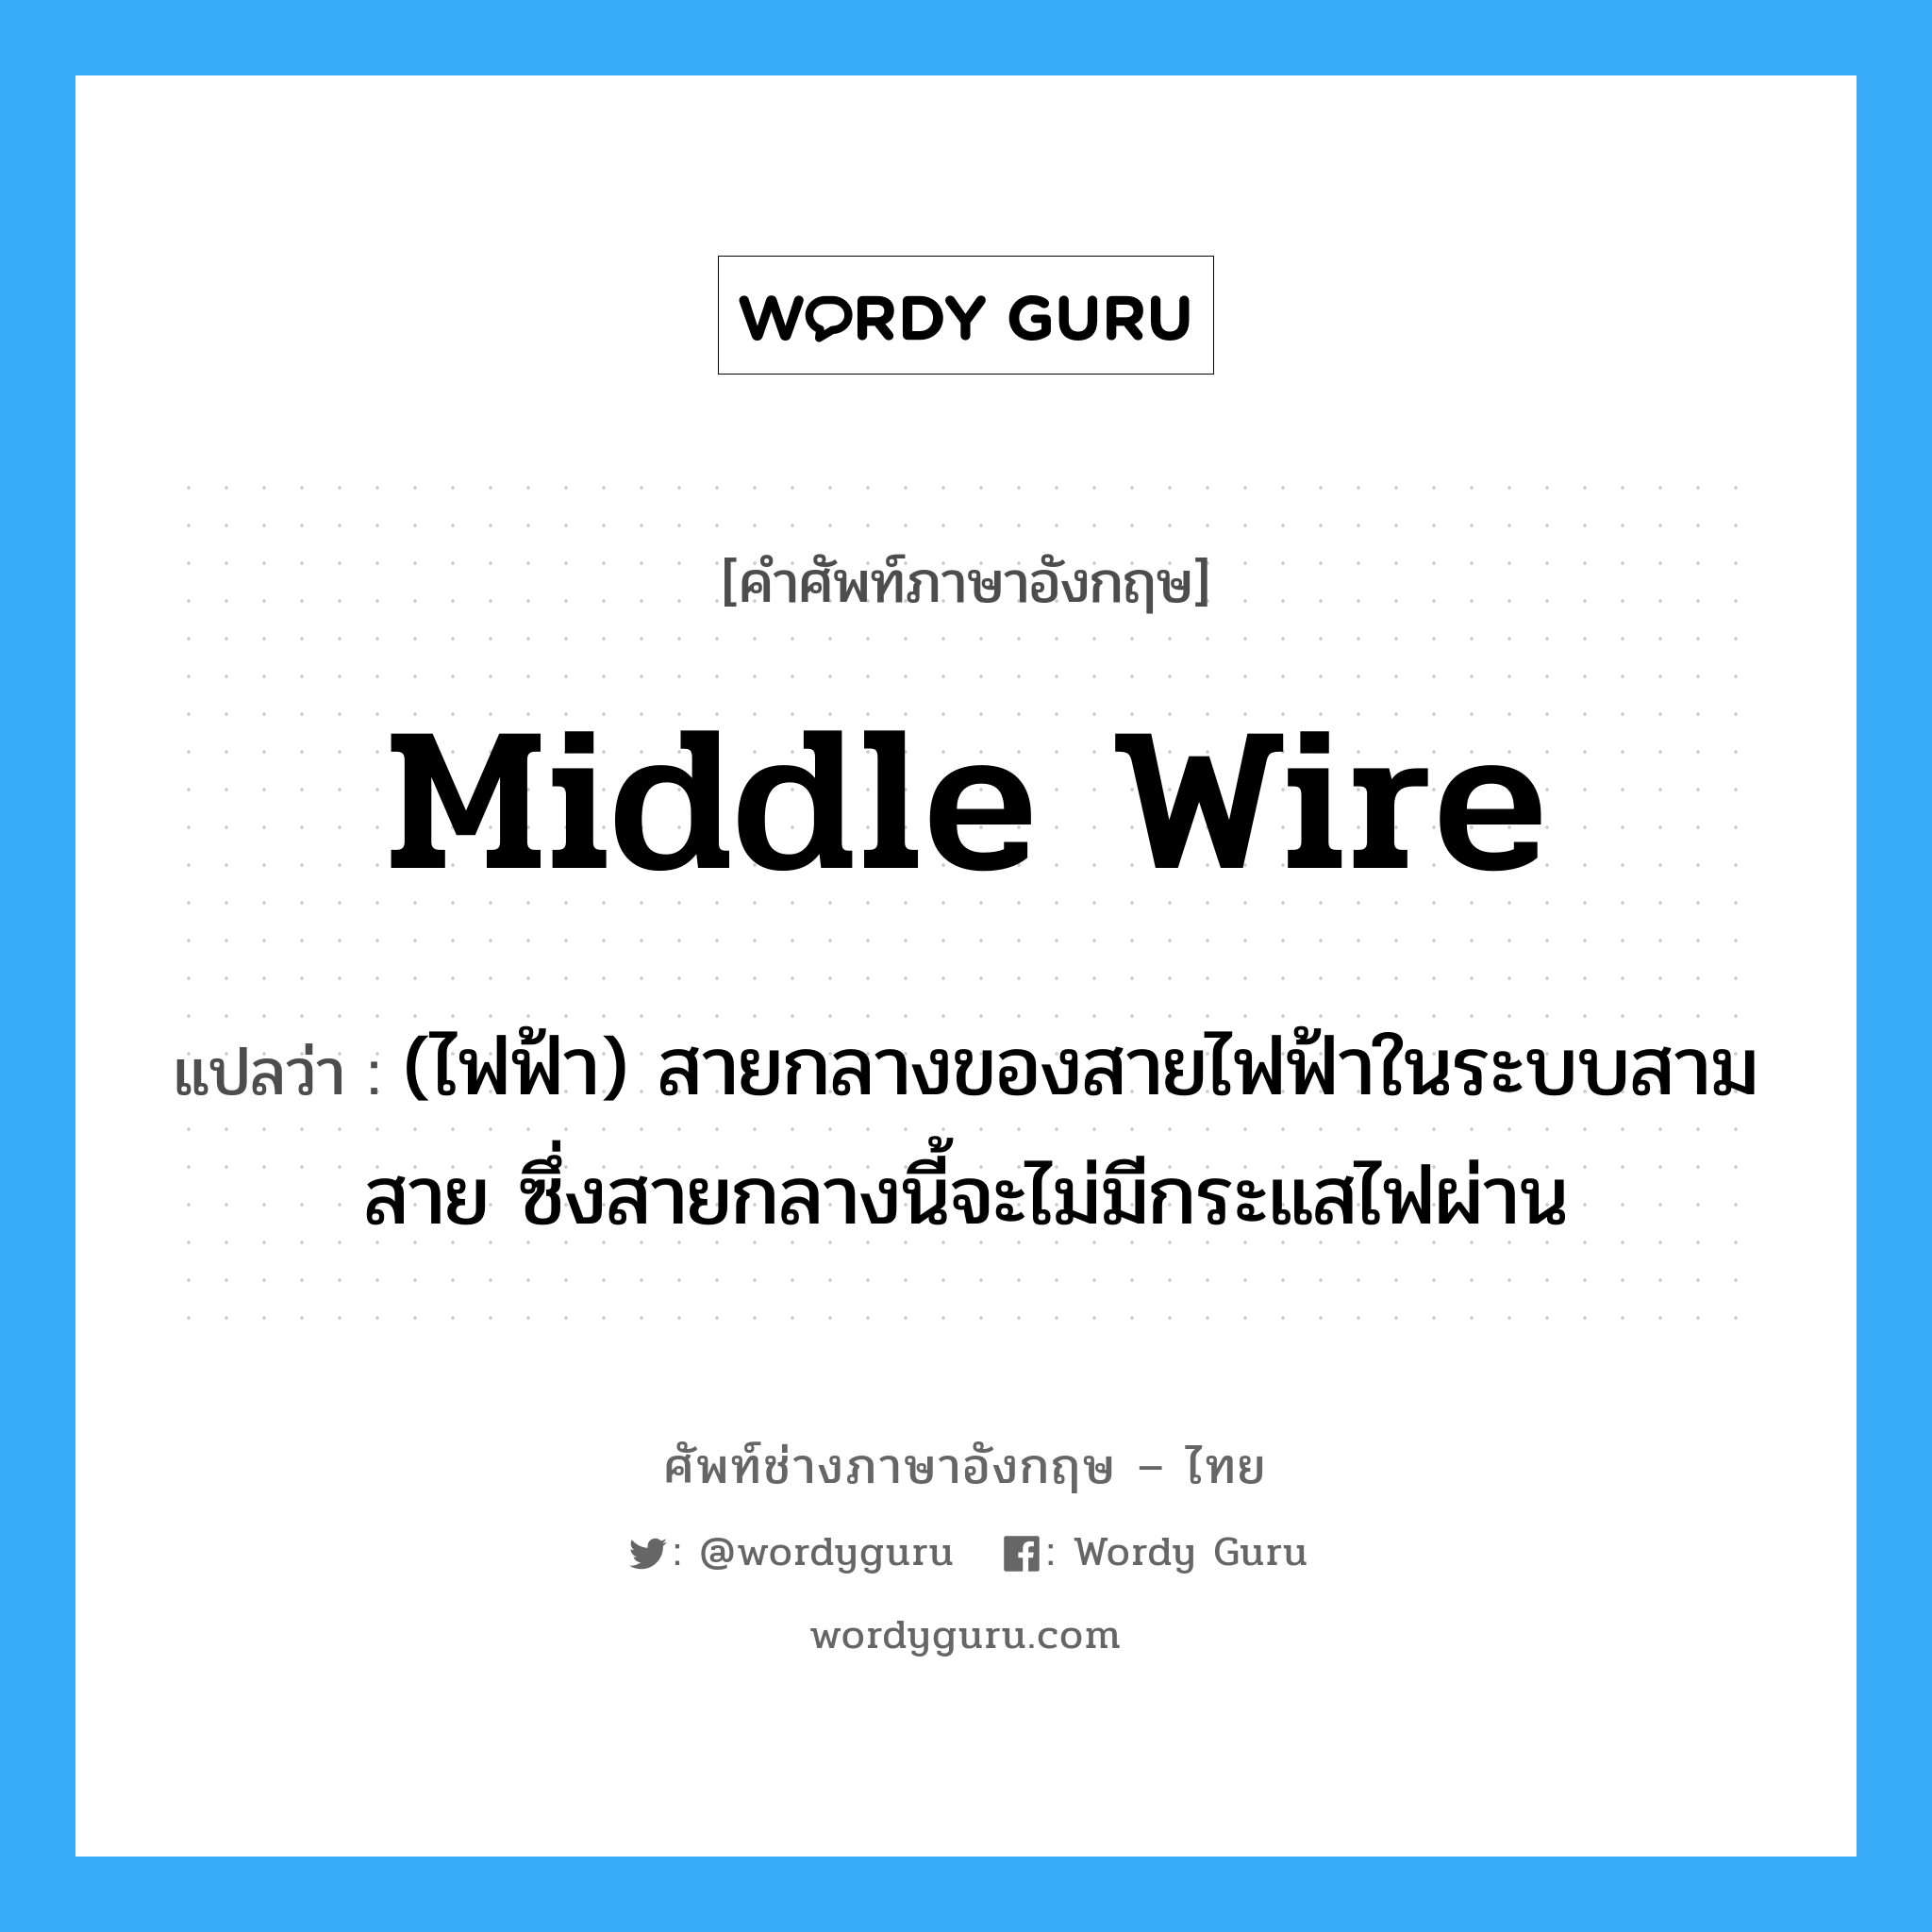 middle wire แปลว่า?, คำศัพท์ช่างภาษาอังกฤษ - ไทย middle wire คำศัพท์ภาษาอังกฤษ middle wire แปลว่า (ไฟฟ้า) สายกลางของสายไฟฟ้าในระบบสามสาย ซึ่งสายกลางนี้จะไม่มีกระแสไฟผ่าน